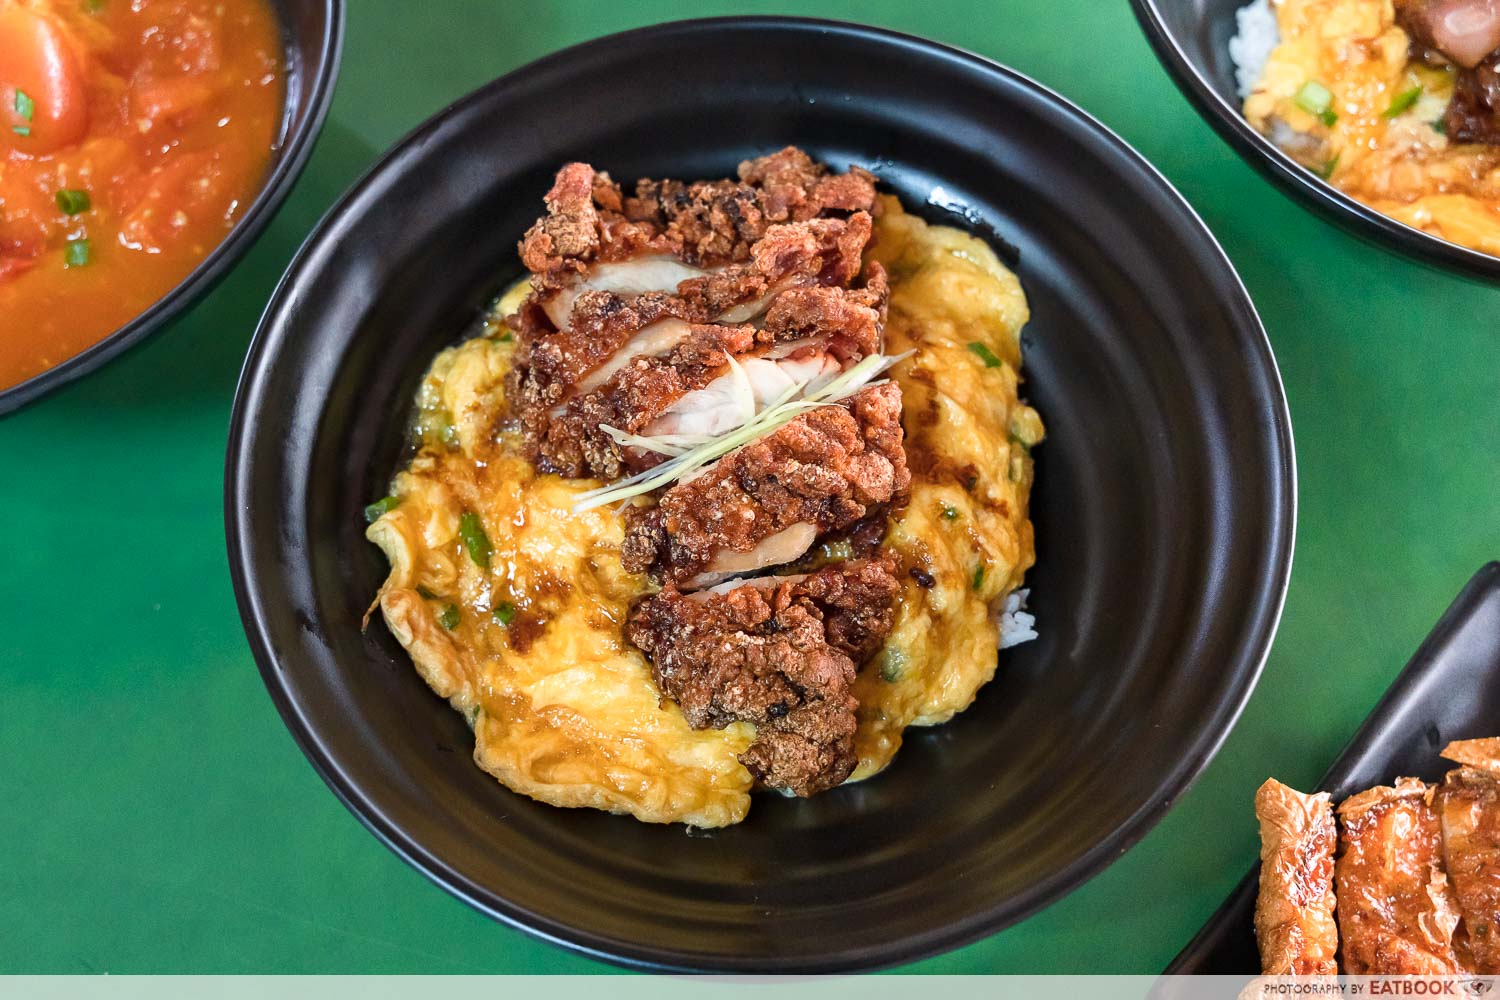 Danlao - chicken cutlet scrambled egg rice